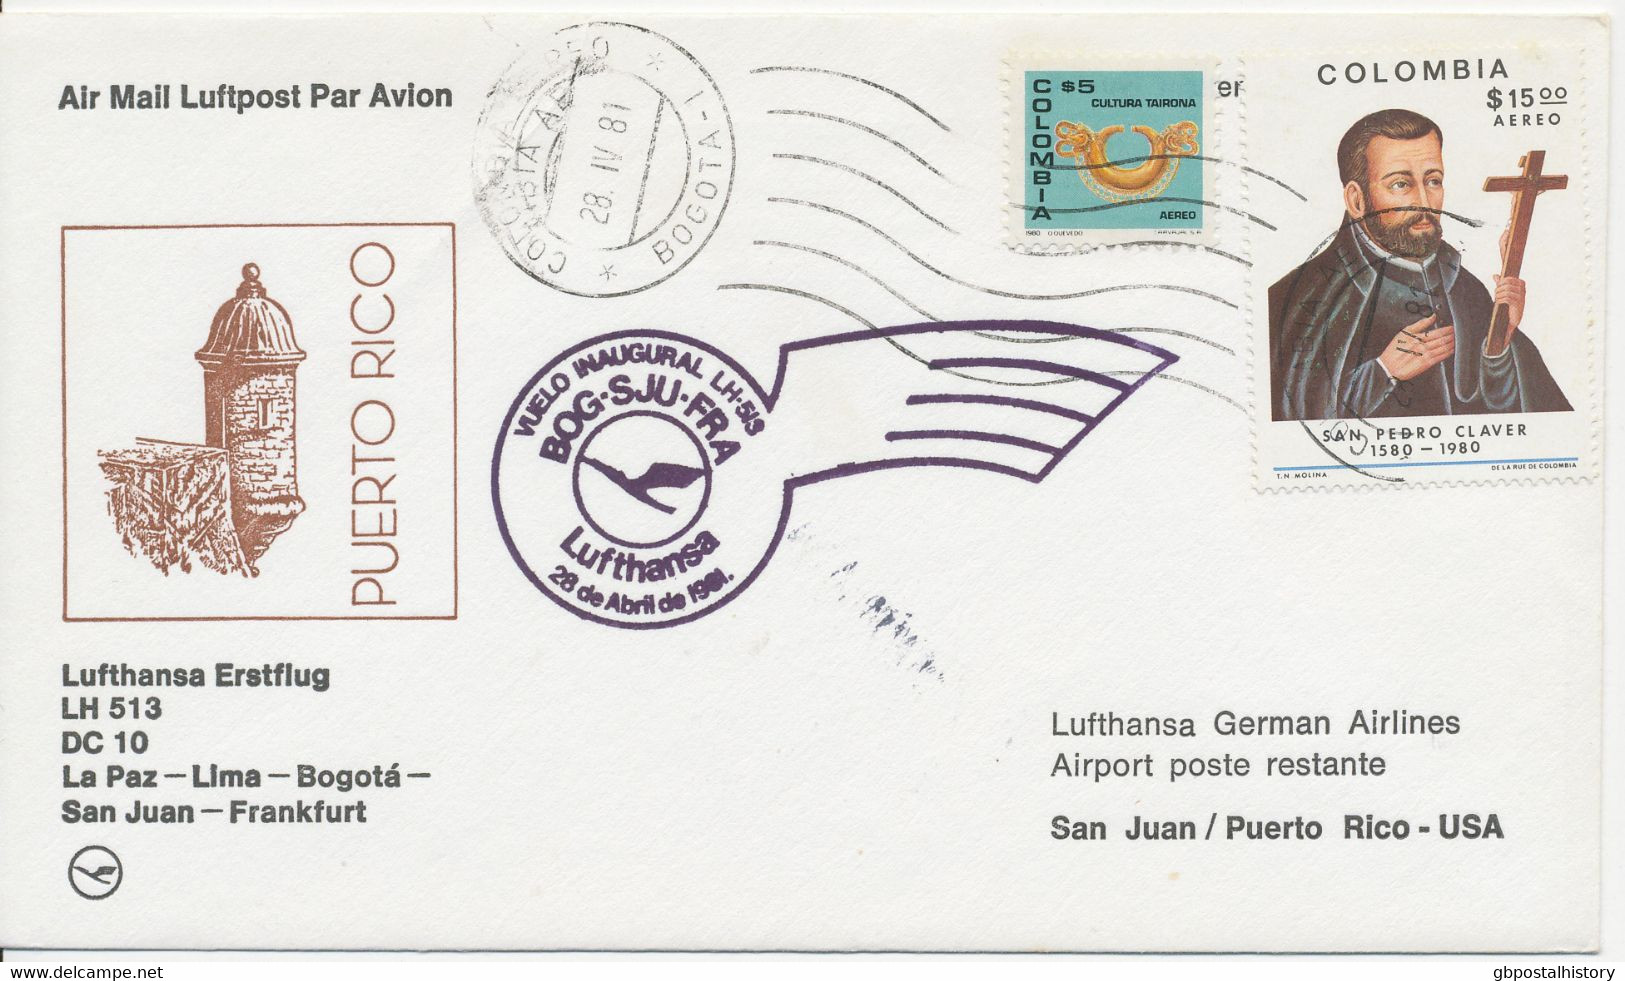 KOLUMBIEN 1981 Kab.-Erstflug Der Deutsche Lufthansa M. DC 10 Flug LH 512 "BOGOTA - LA PAZ, Bolivien" (Hab.2472/Sie.1339) - Colombie